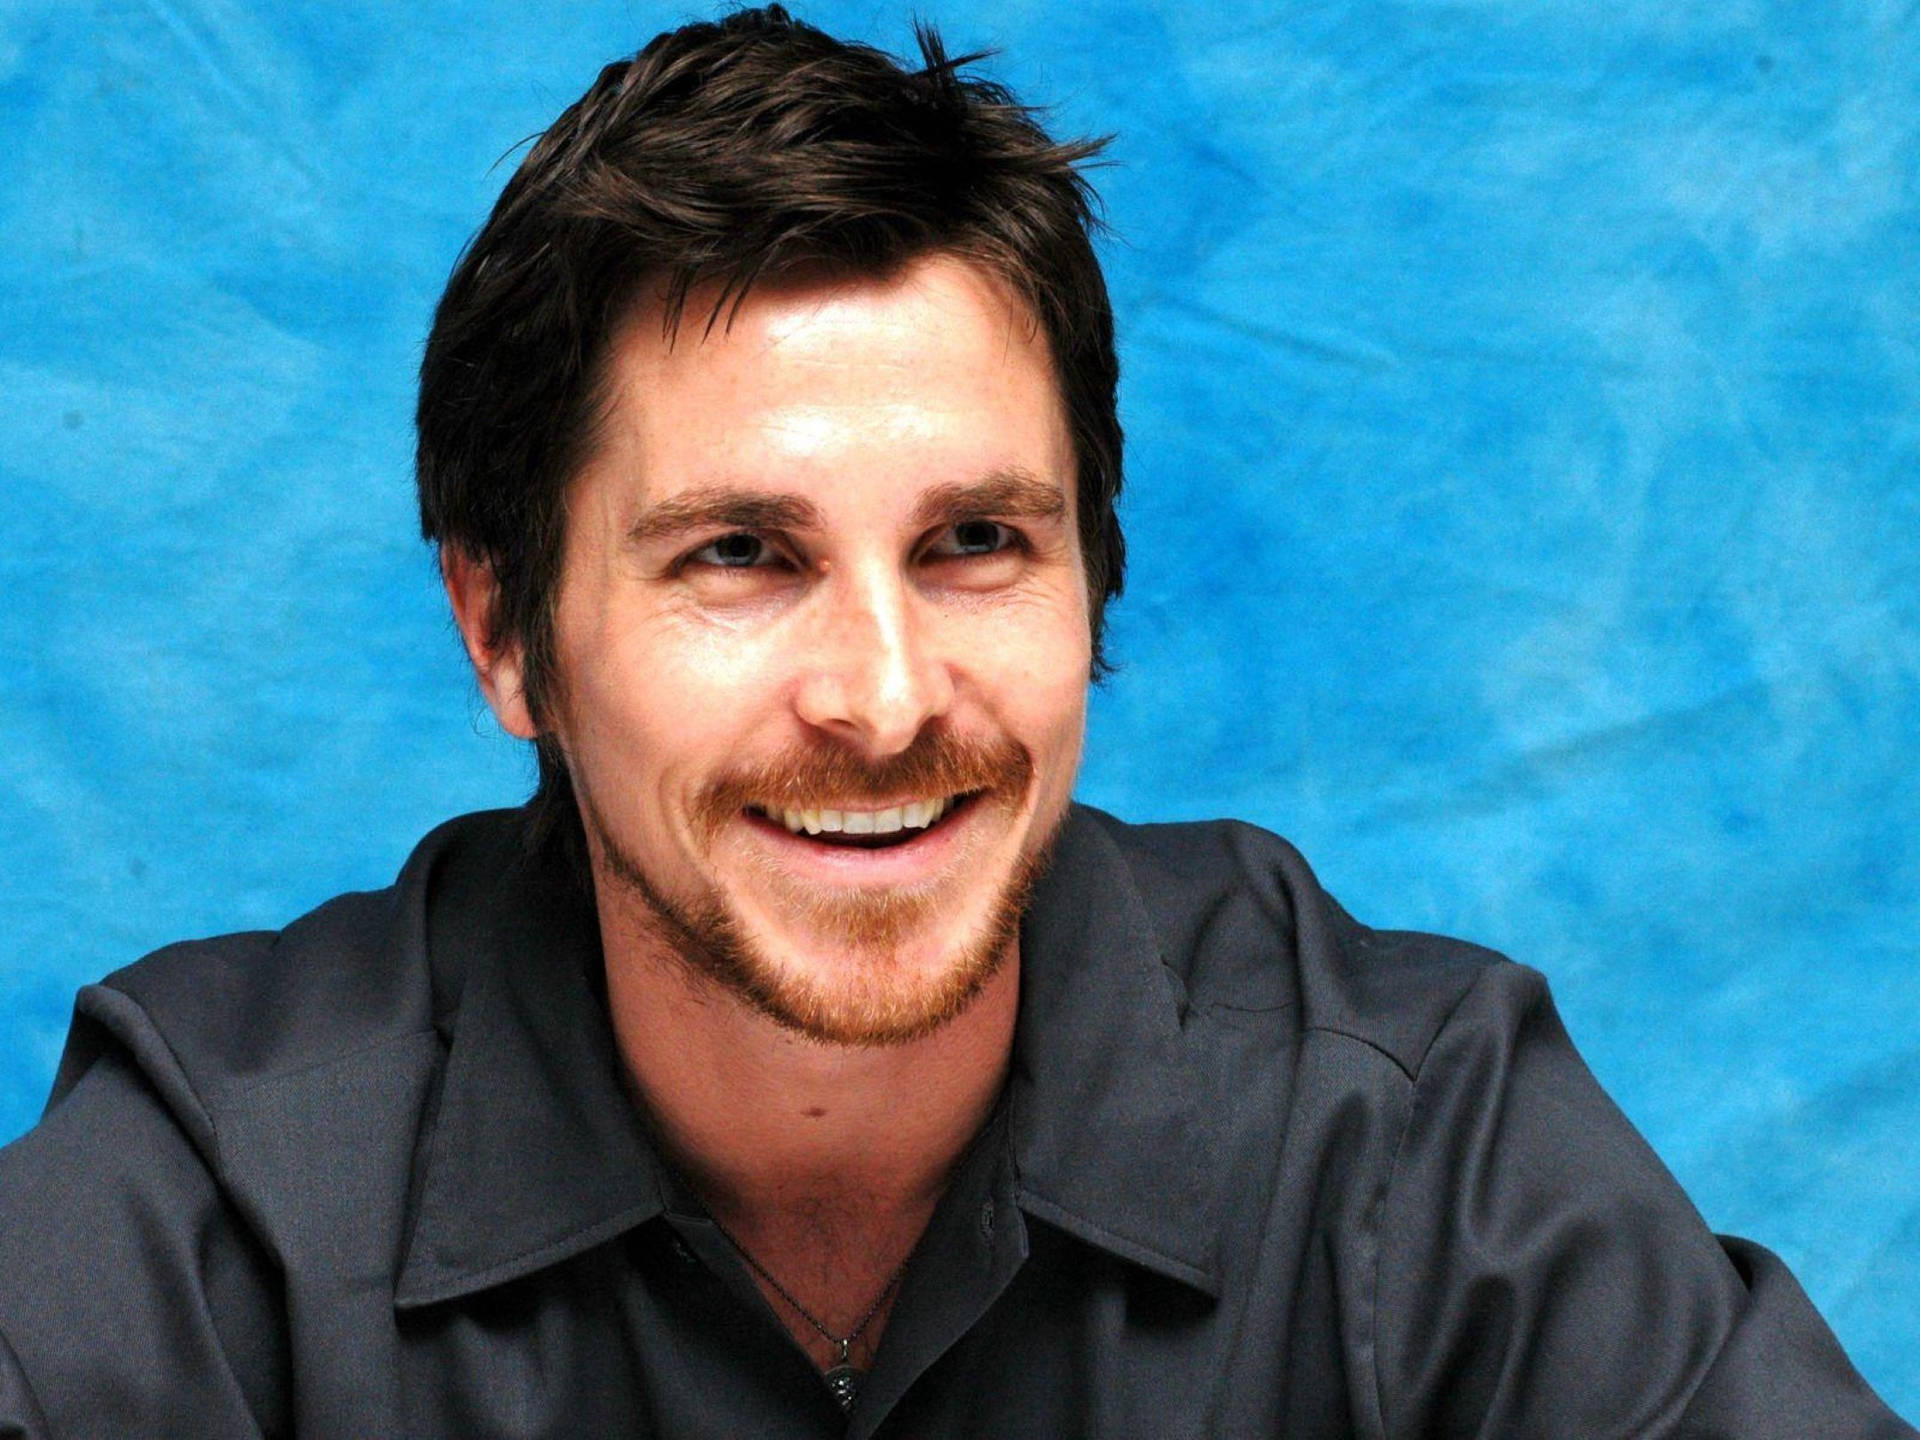 Christian Bale Golden Globe Winner Background